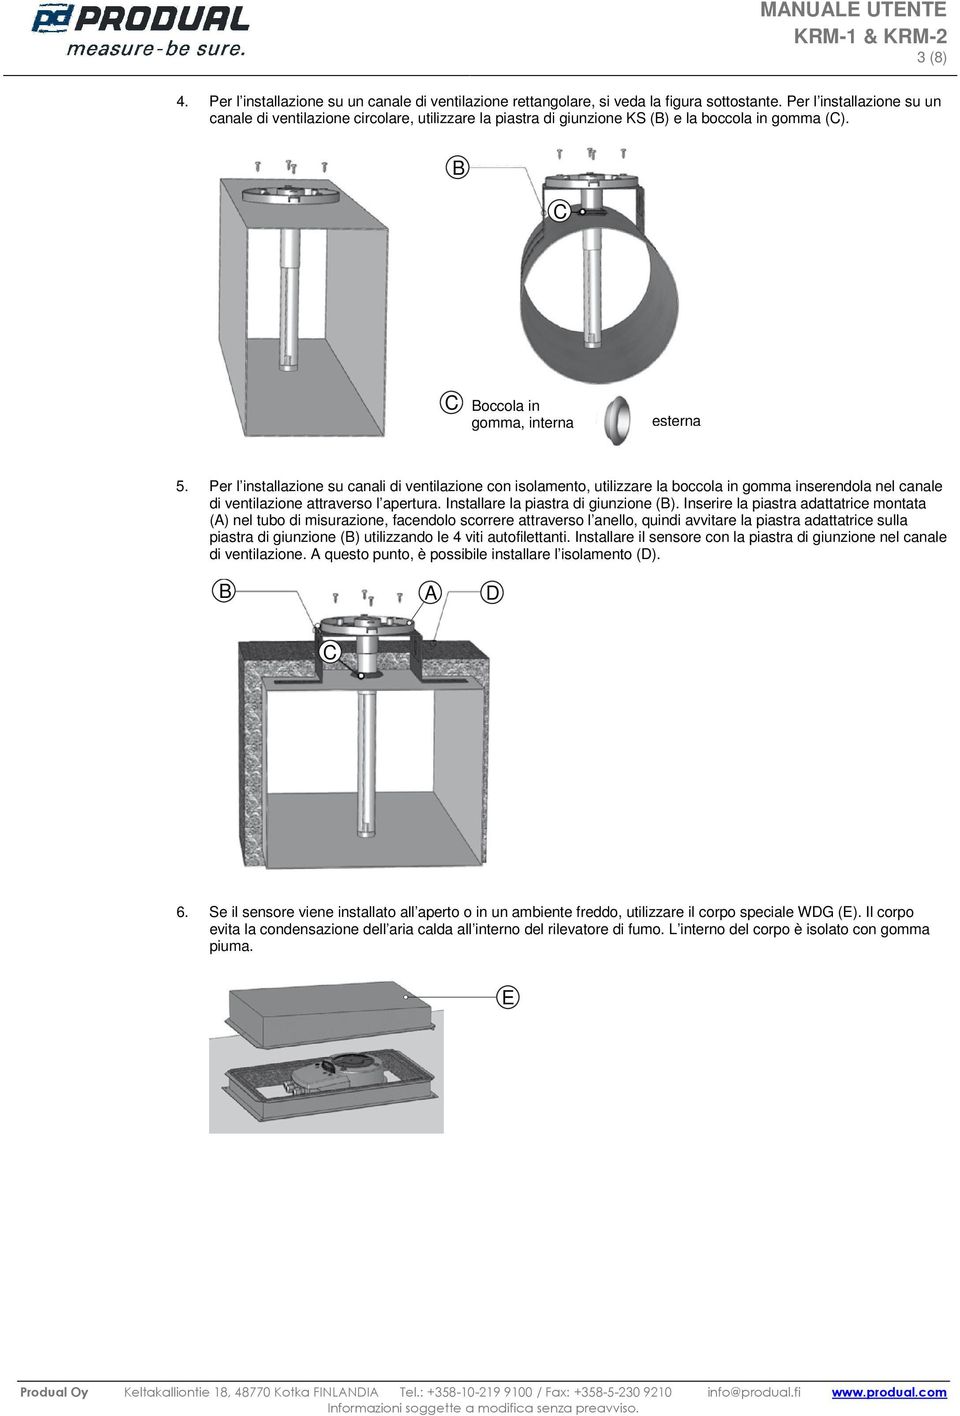 Per l installazione su canali di ventilazione con isolamento, utilizzare la boccola in gomma inserendola nel canale di ventilazione attraverso l apertura. Installare la piastra di giunzione (B).